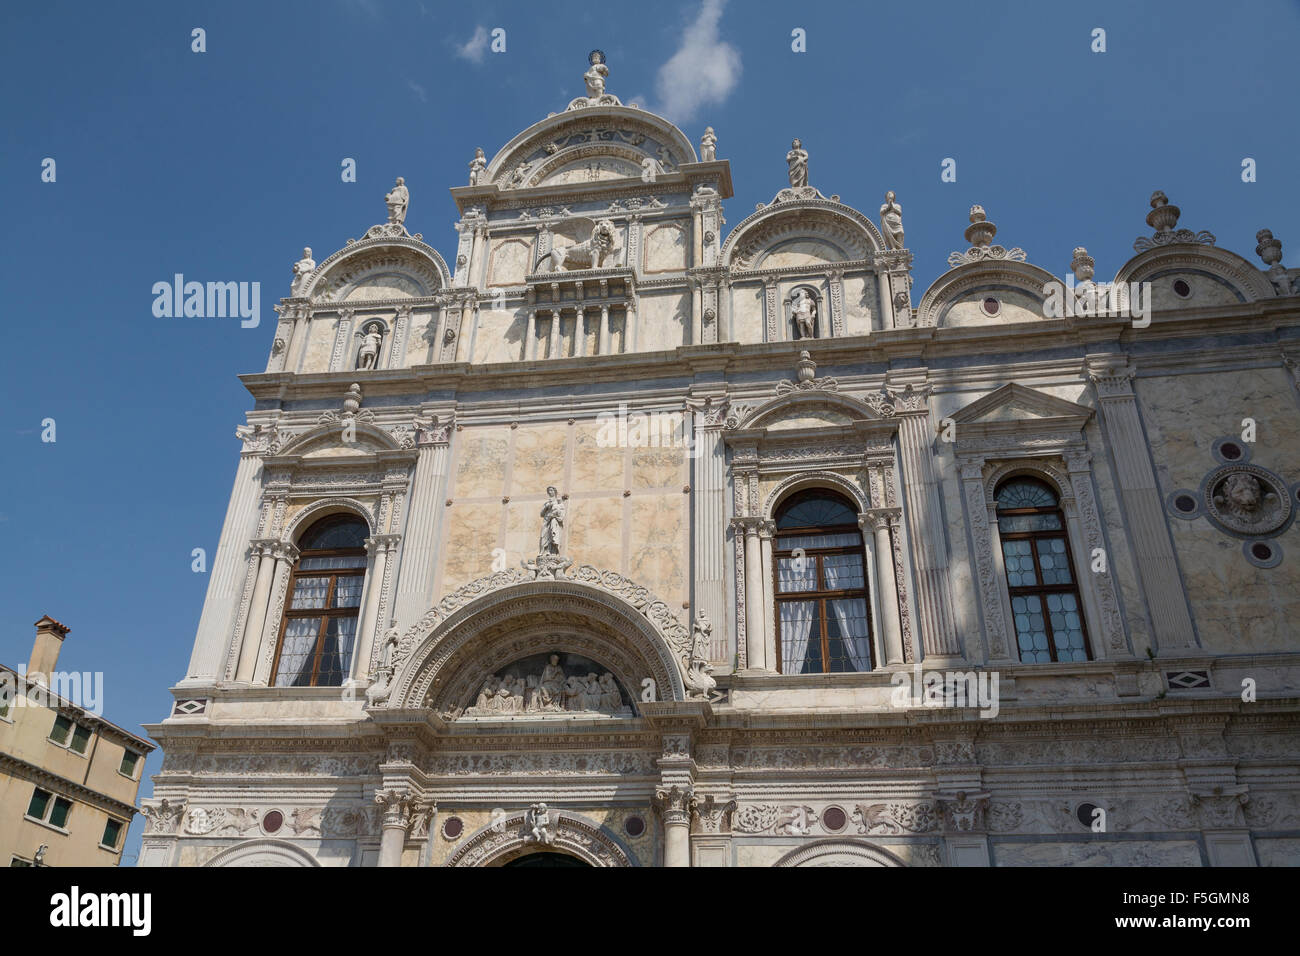 Venice, Italy, the Scuola Grande di San Marco Stock Photo